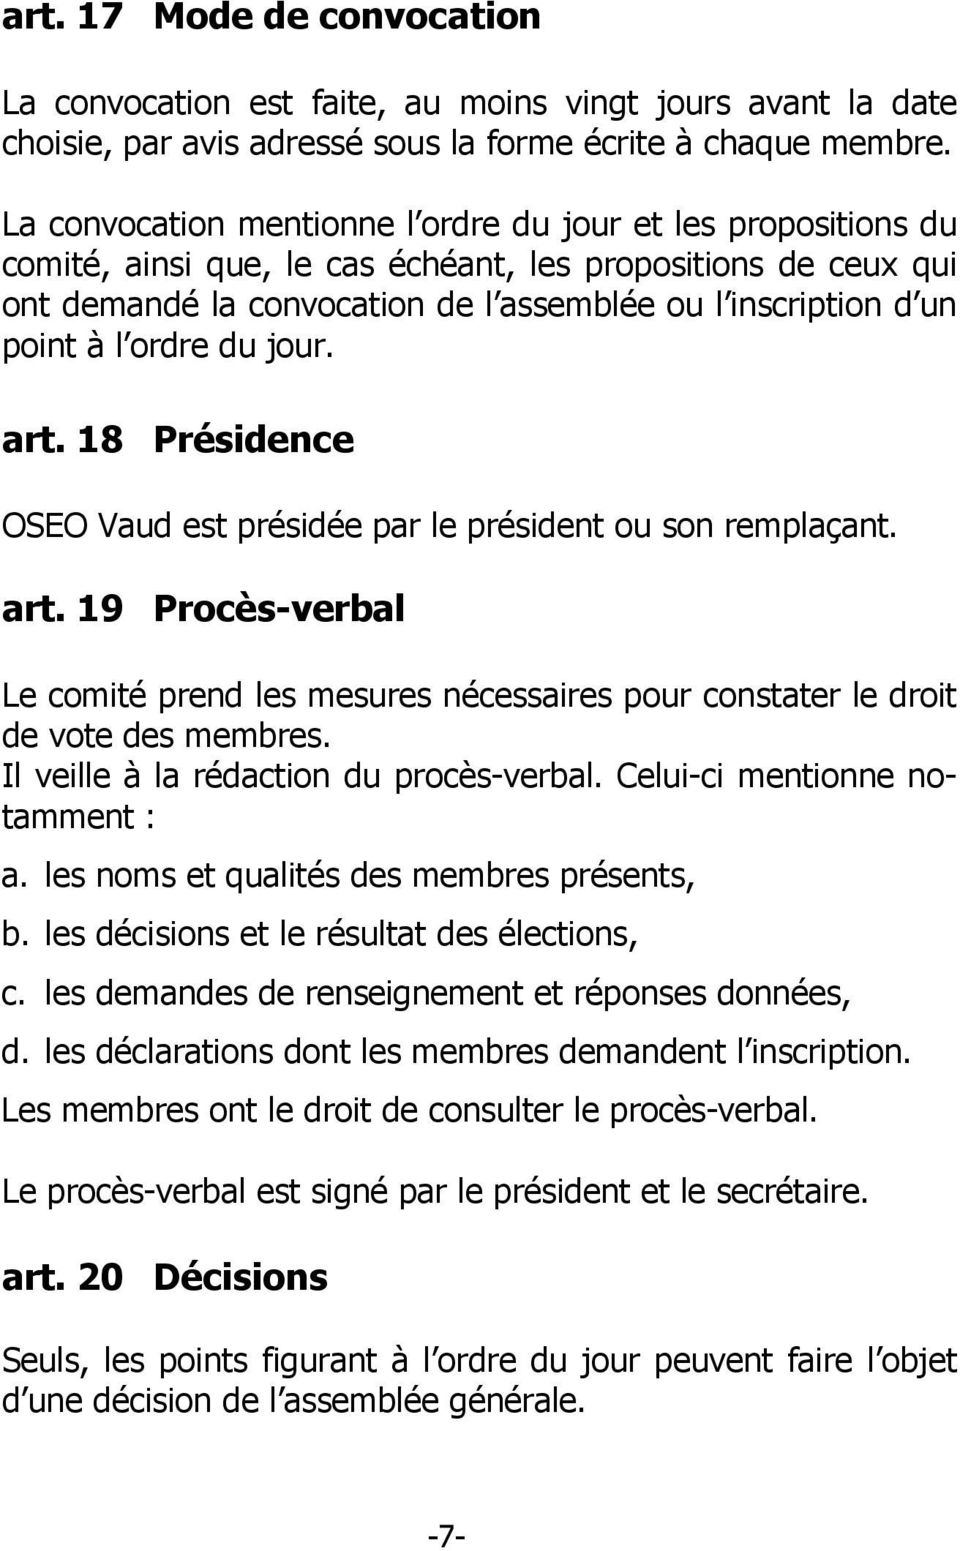 l ordre du jour. art. 18 Présidence OSEO Vaud est présidée par le président ou son remplaçant. art. 19 Procès-verbal Le comité prend les mesures nécessaires pour constater le droit de vote des membres.